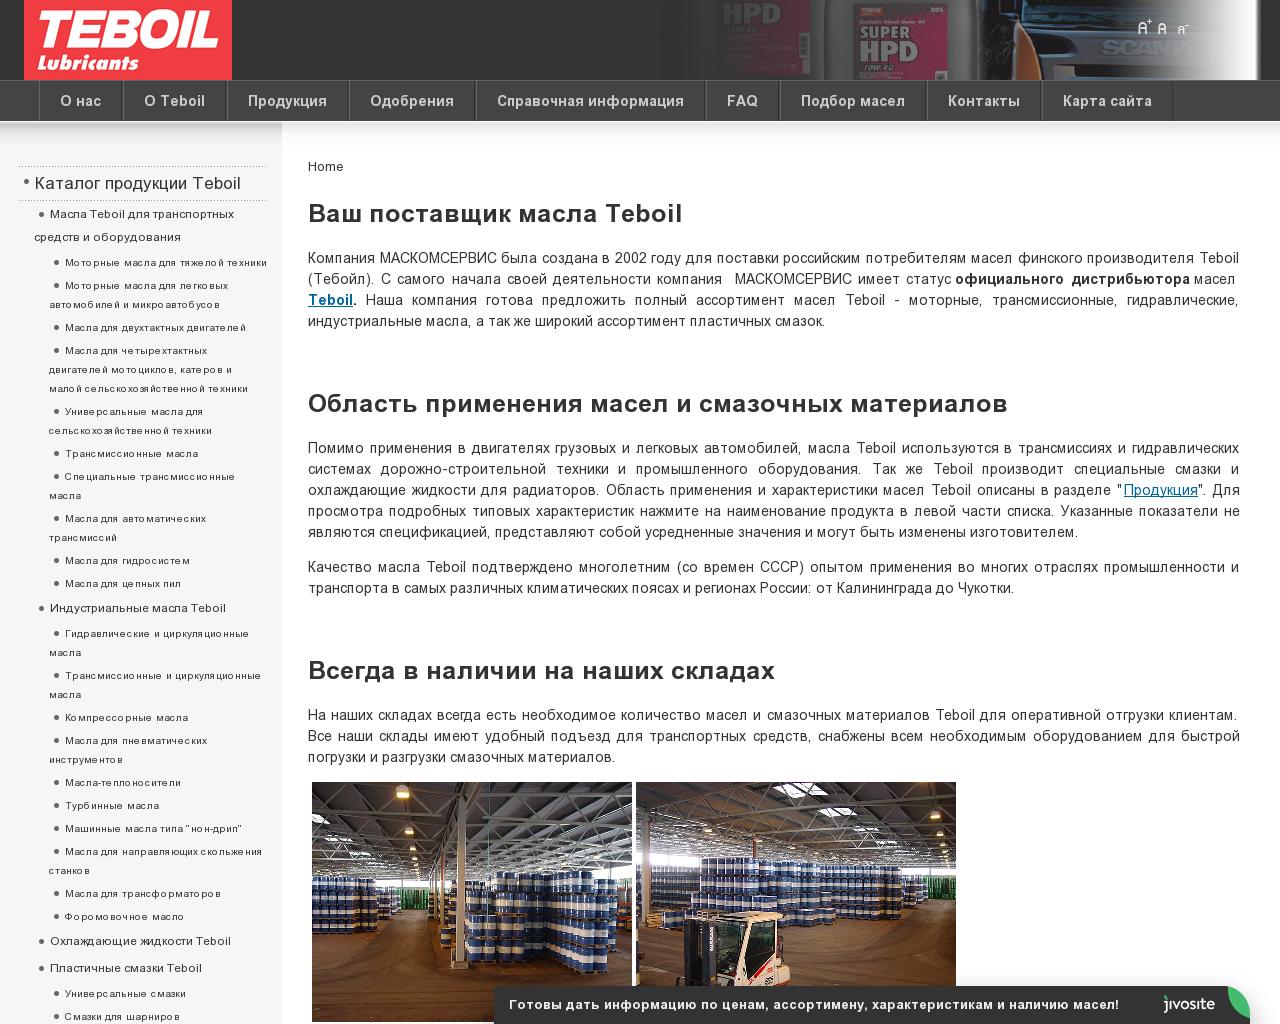 Изображение сайта tbl.ru в разрешении 1280x1024